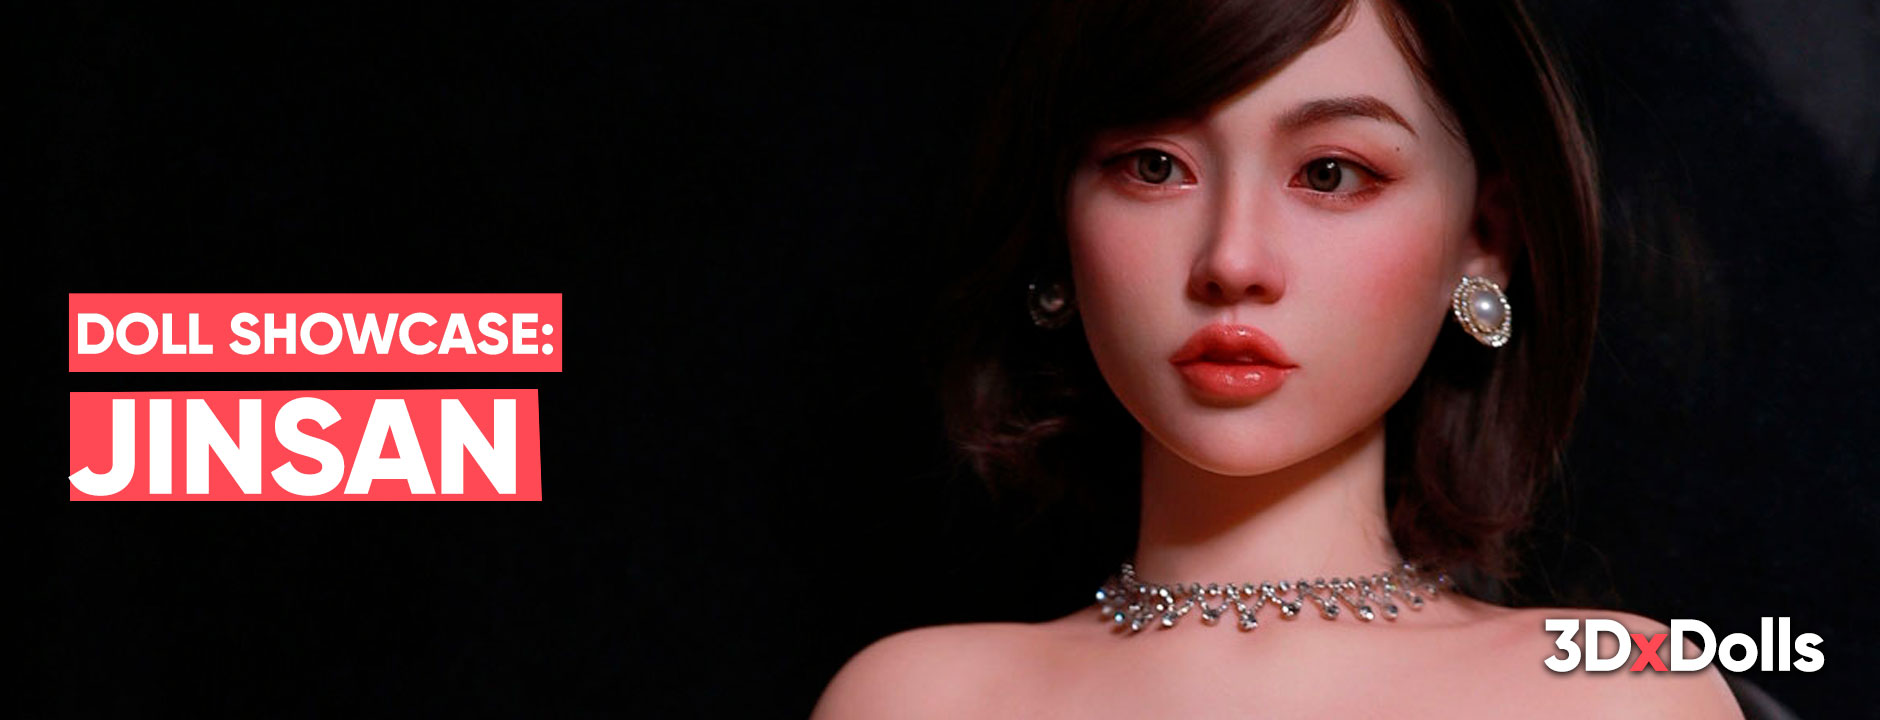 Doll Showcase: Jinsan